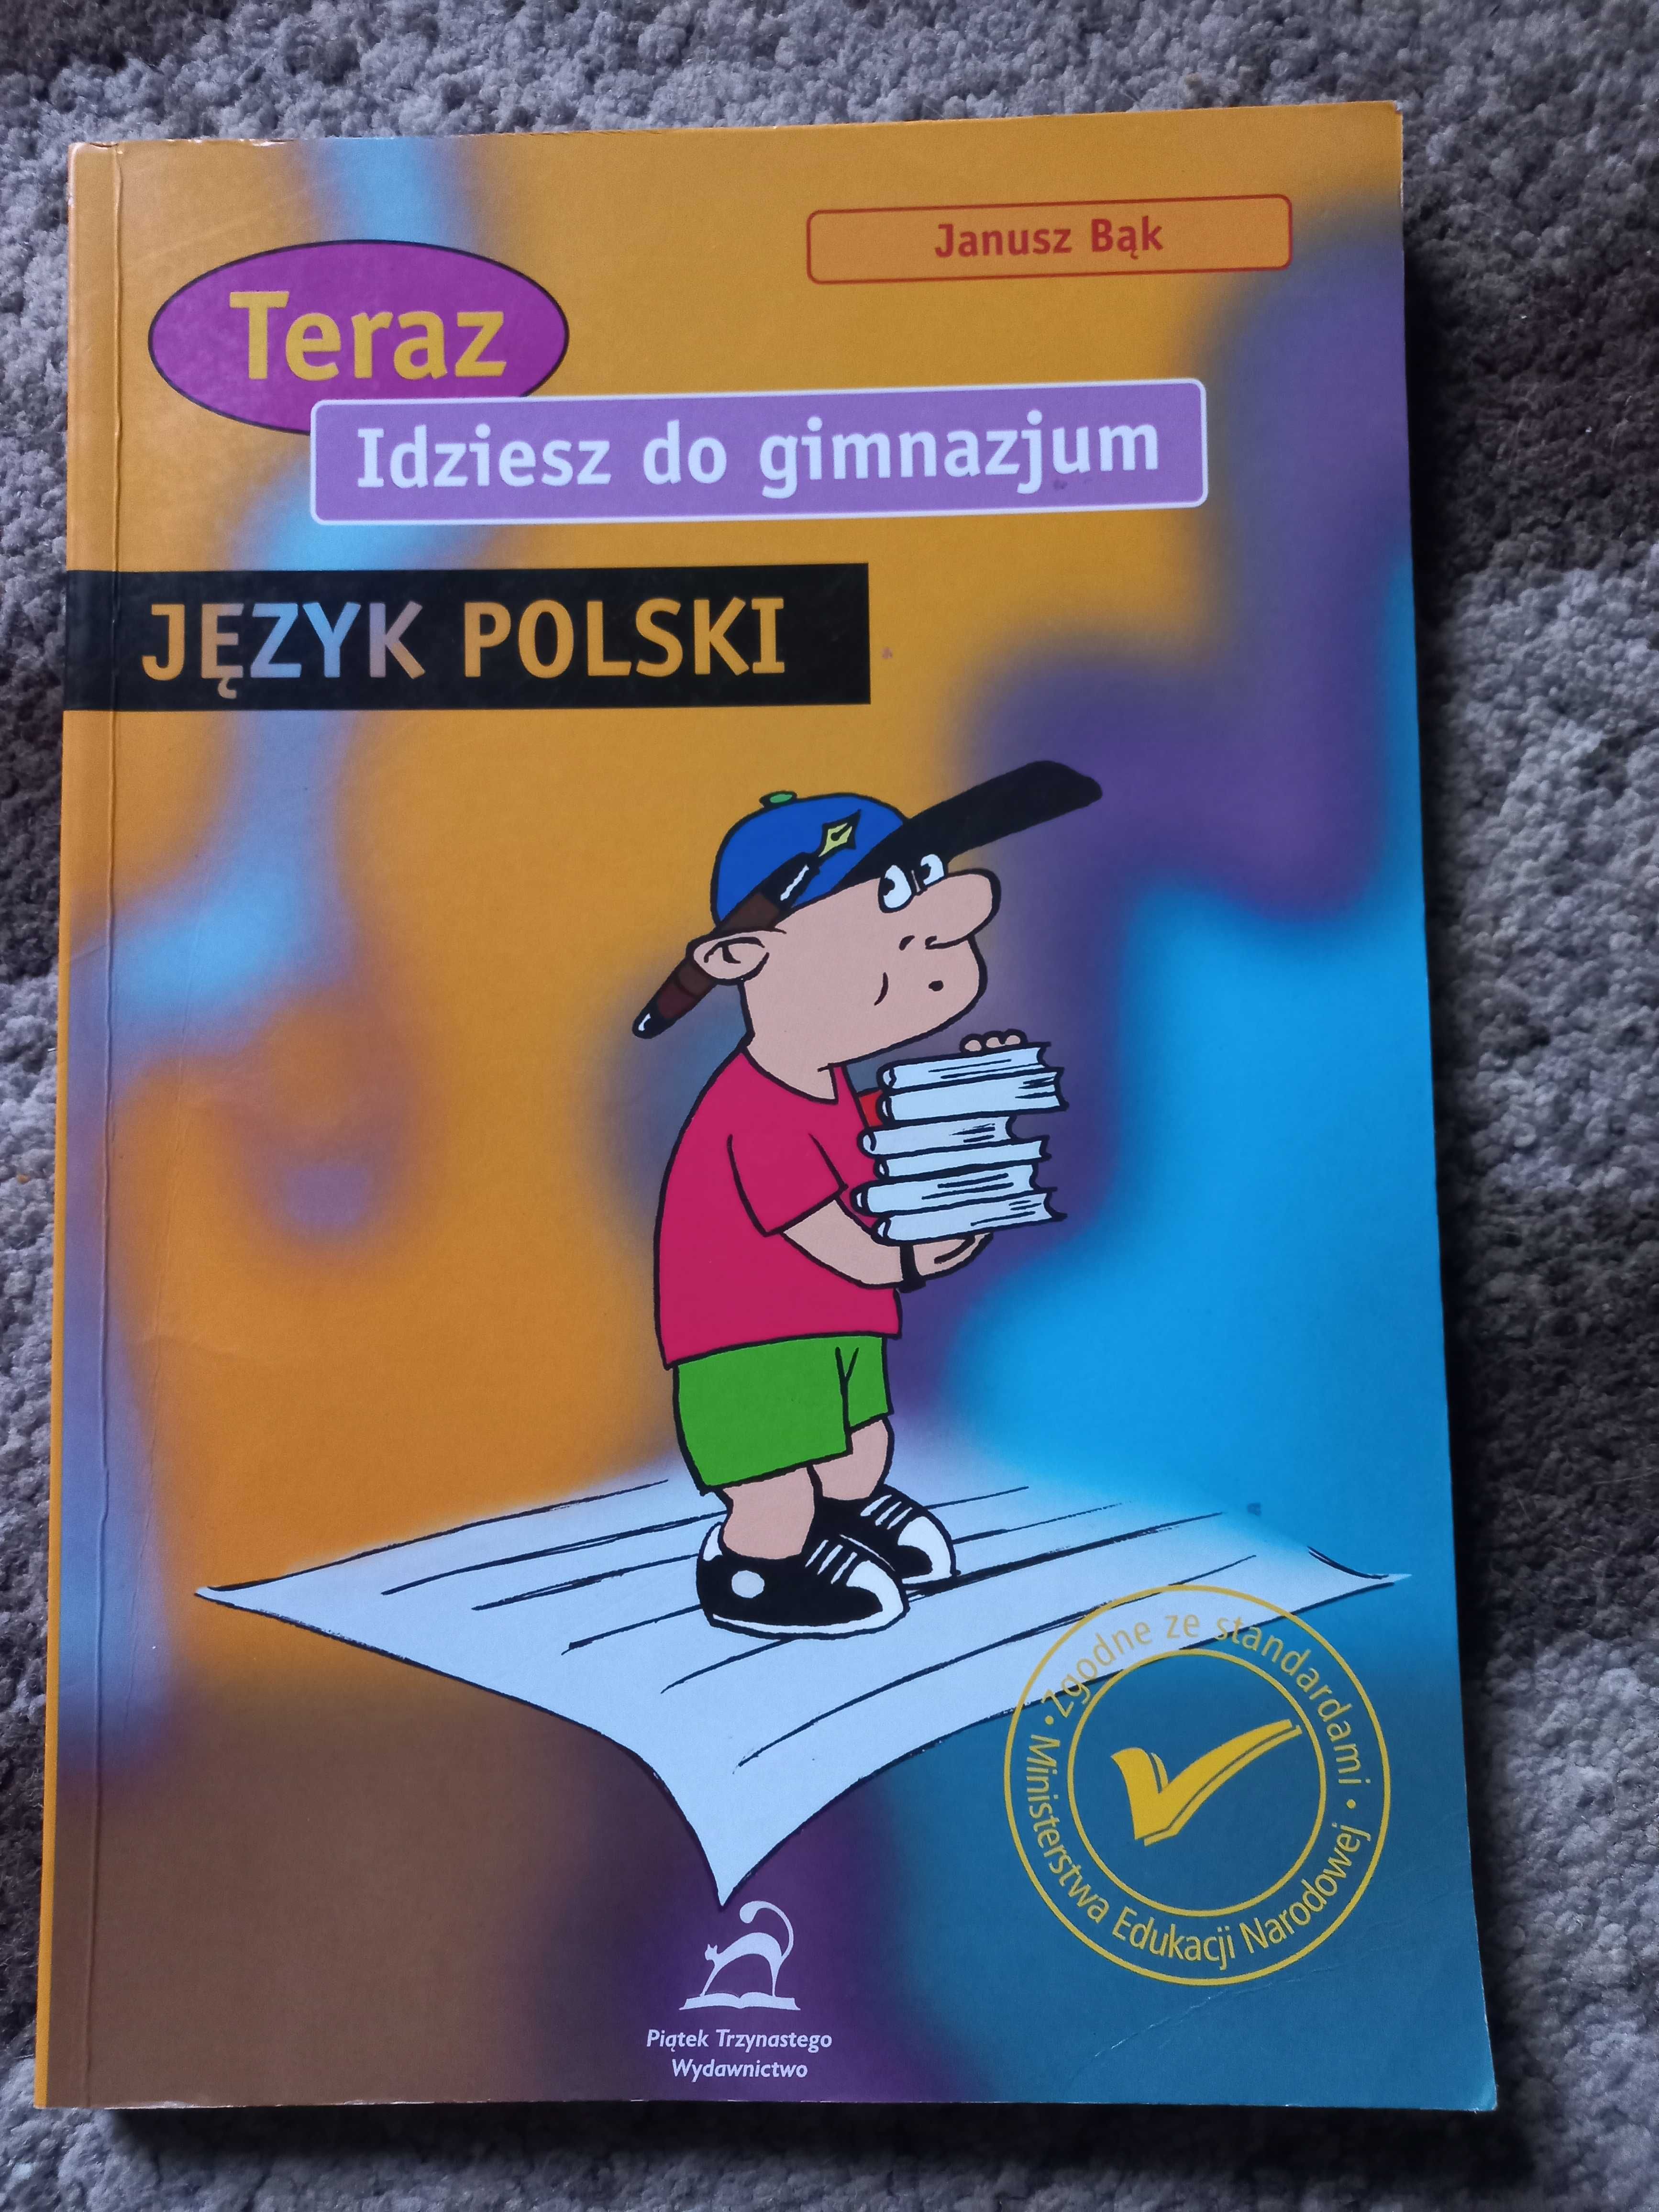 Język Polski "Teraz idziesz do gimnazjum" autor: Janusz Bąk